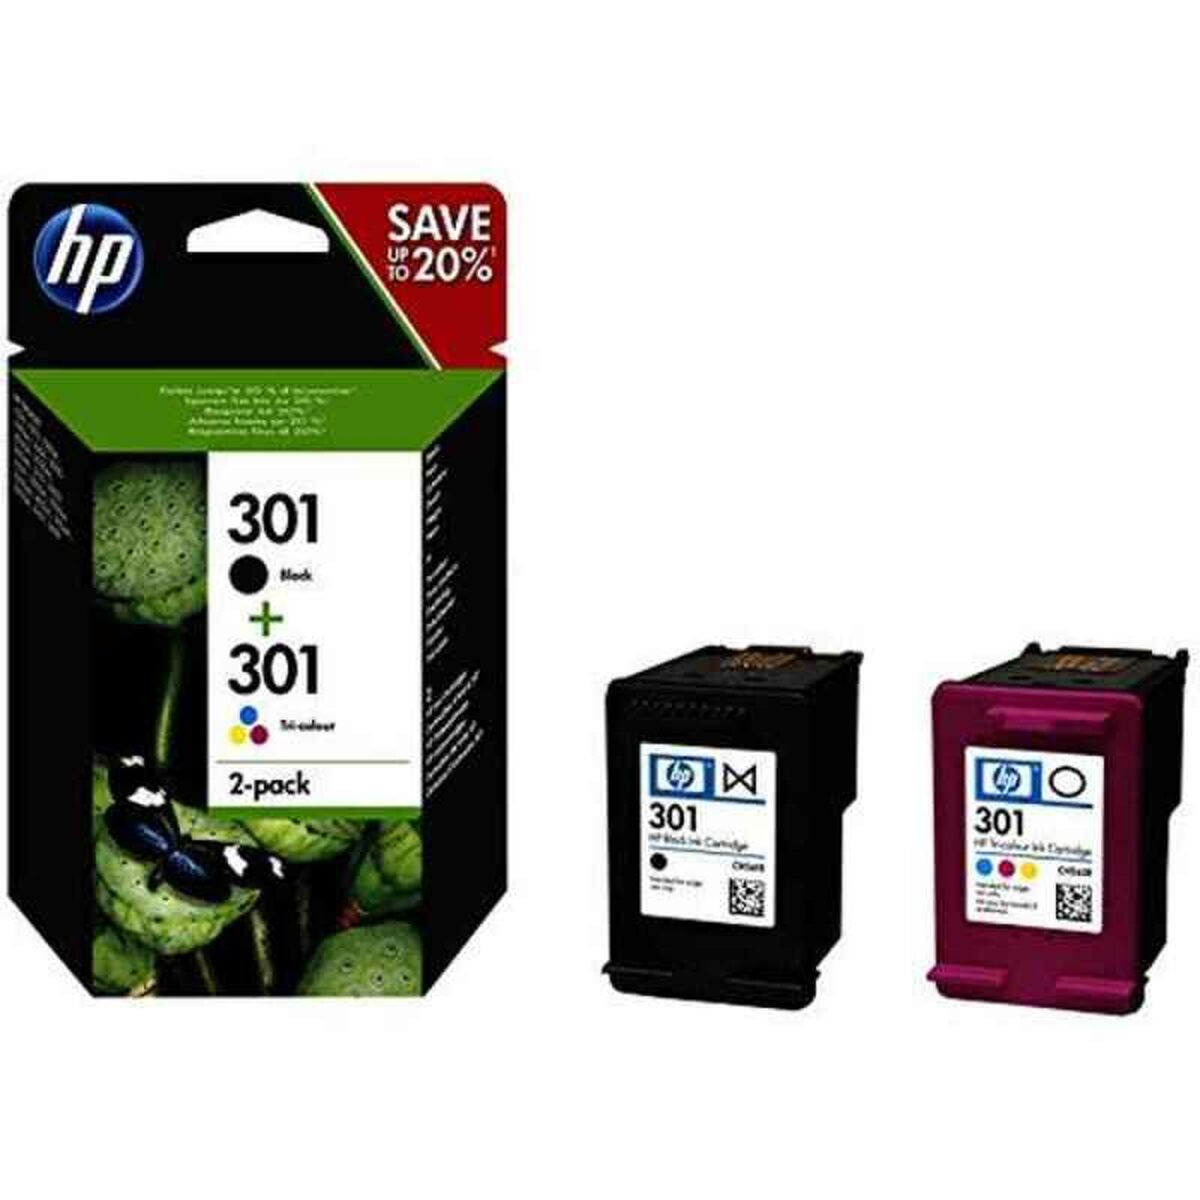 Compatible Ink Cartridge HP 301 Black Tricolour